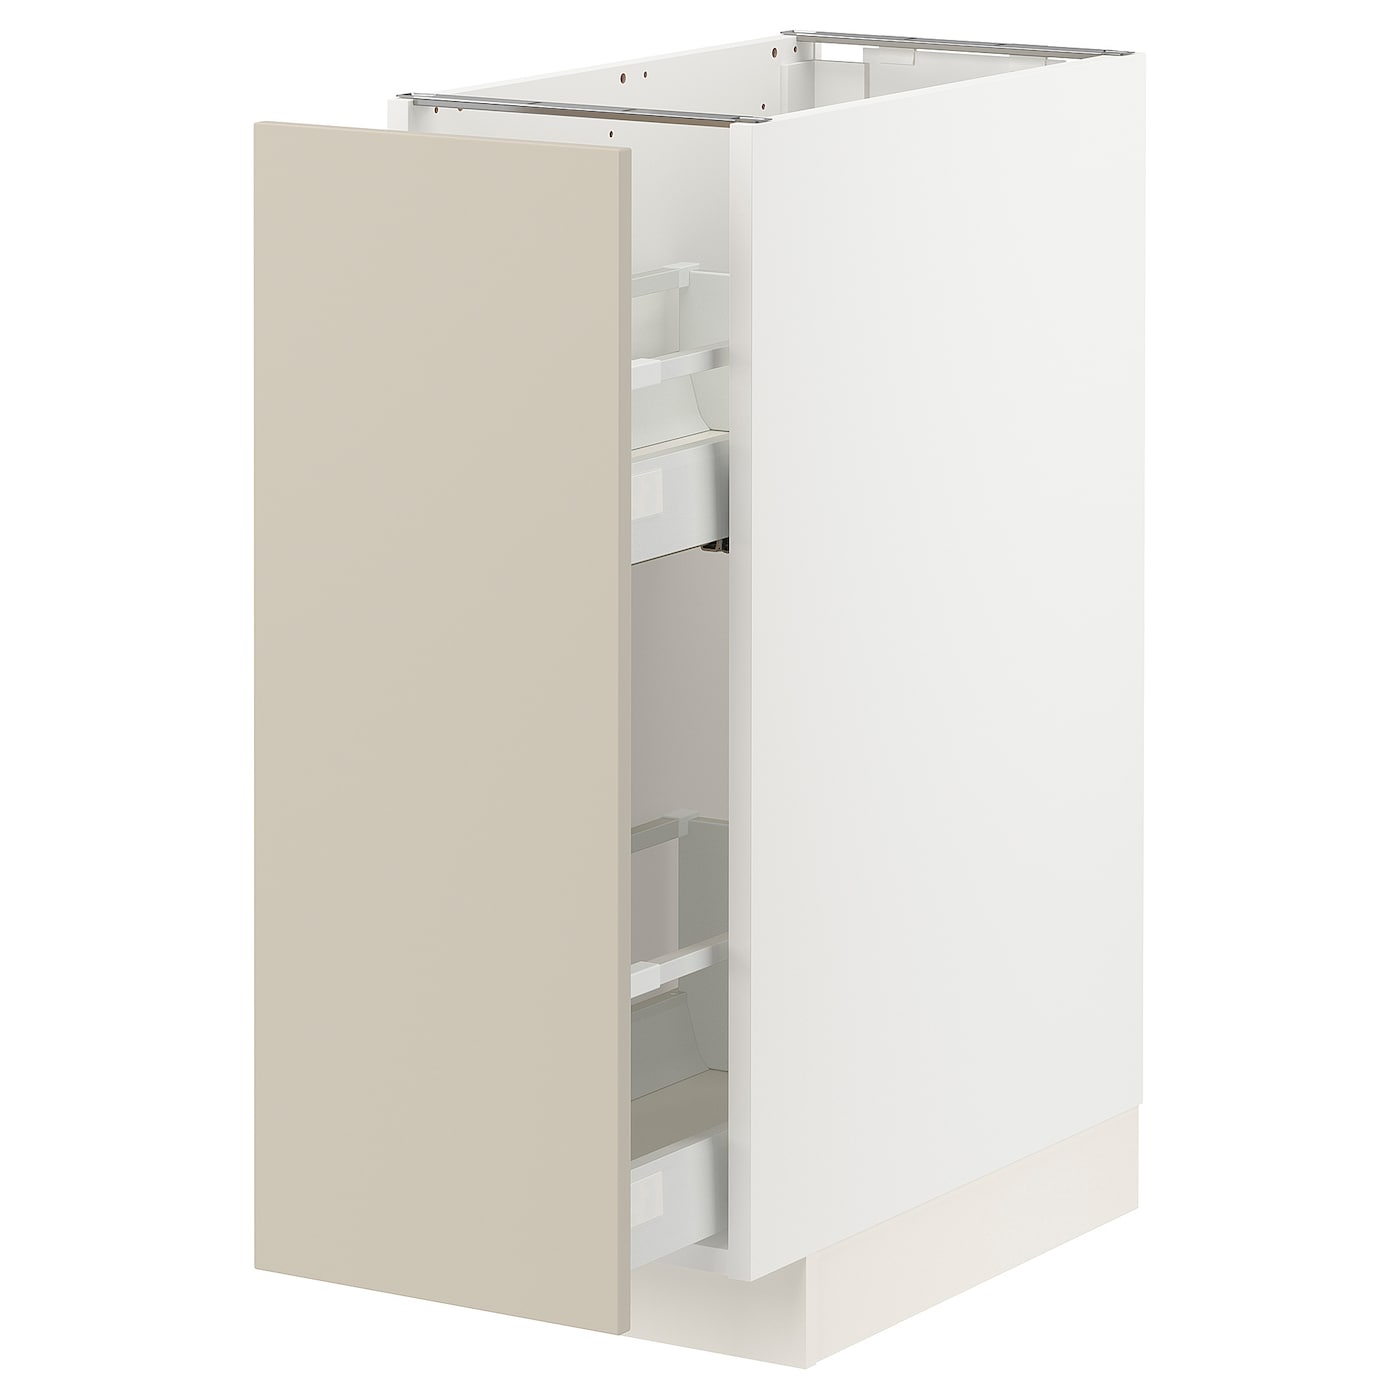 Напольный шкаф - IKEA METOD MAXIMERA, 88x62x30см, белый/бежевый, МЕТОД МАКСИМЕРА ИКЕА